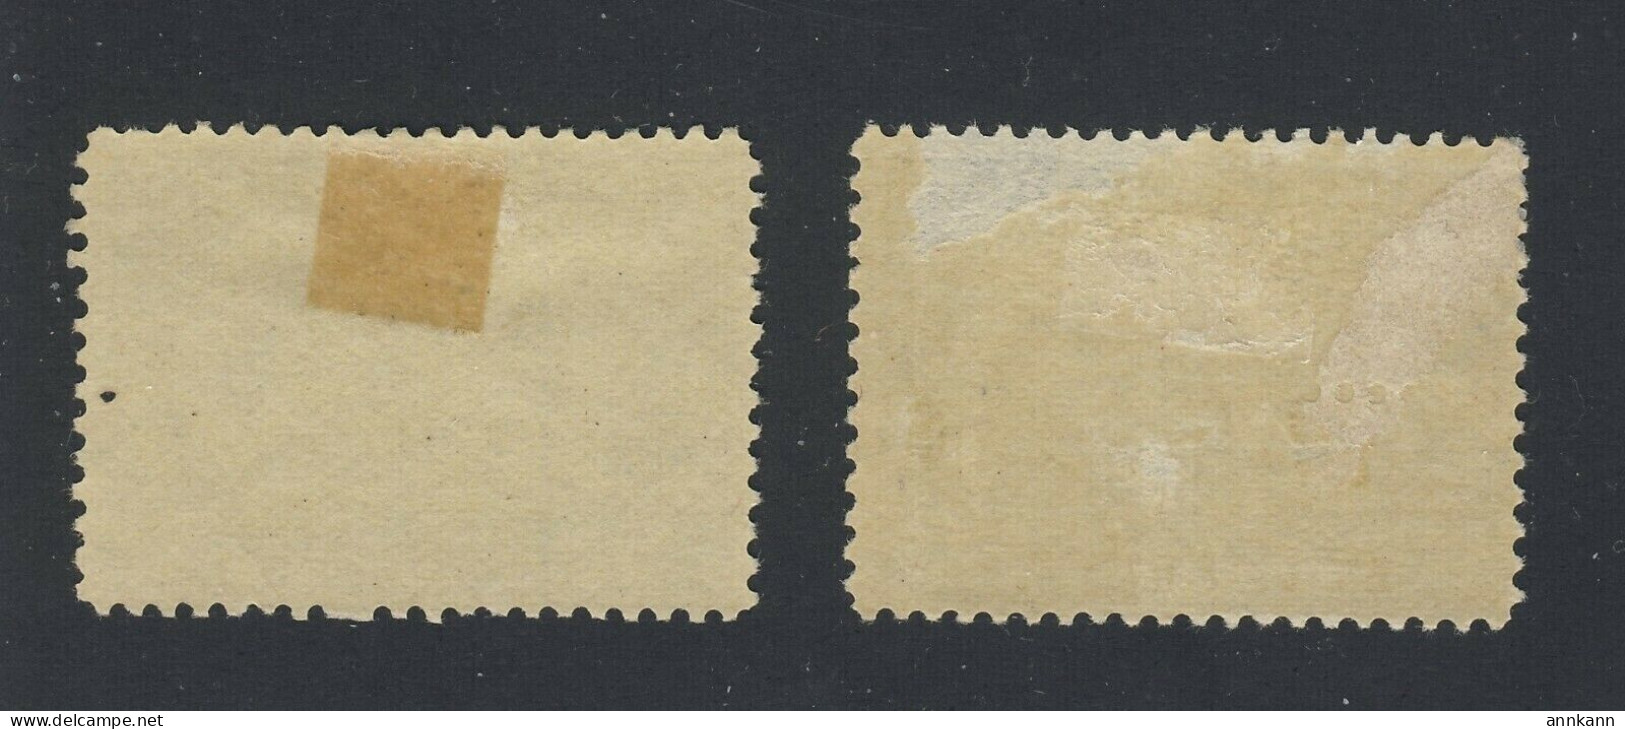 2x Canada Victoria Jubilee MH Stamps #52-2c MHR VF 54-5c MH Thin F/VF GV= $95.00 - Nuovi